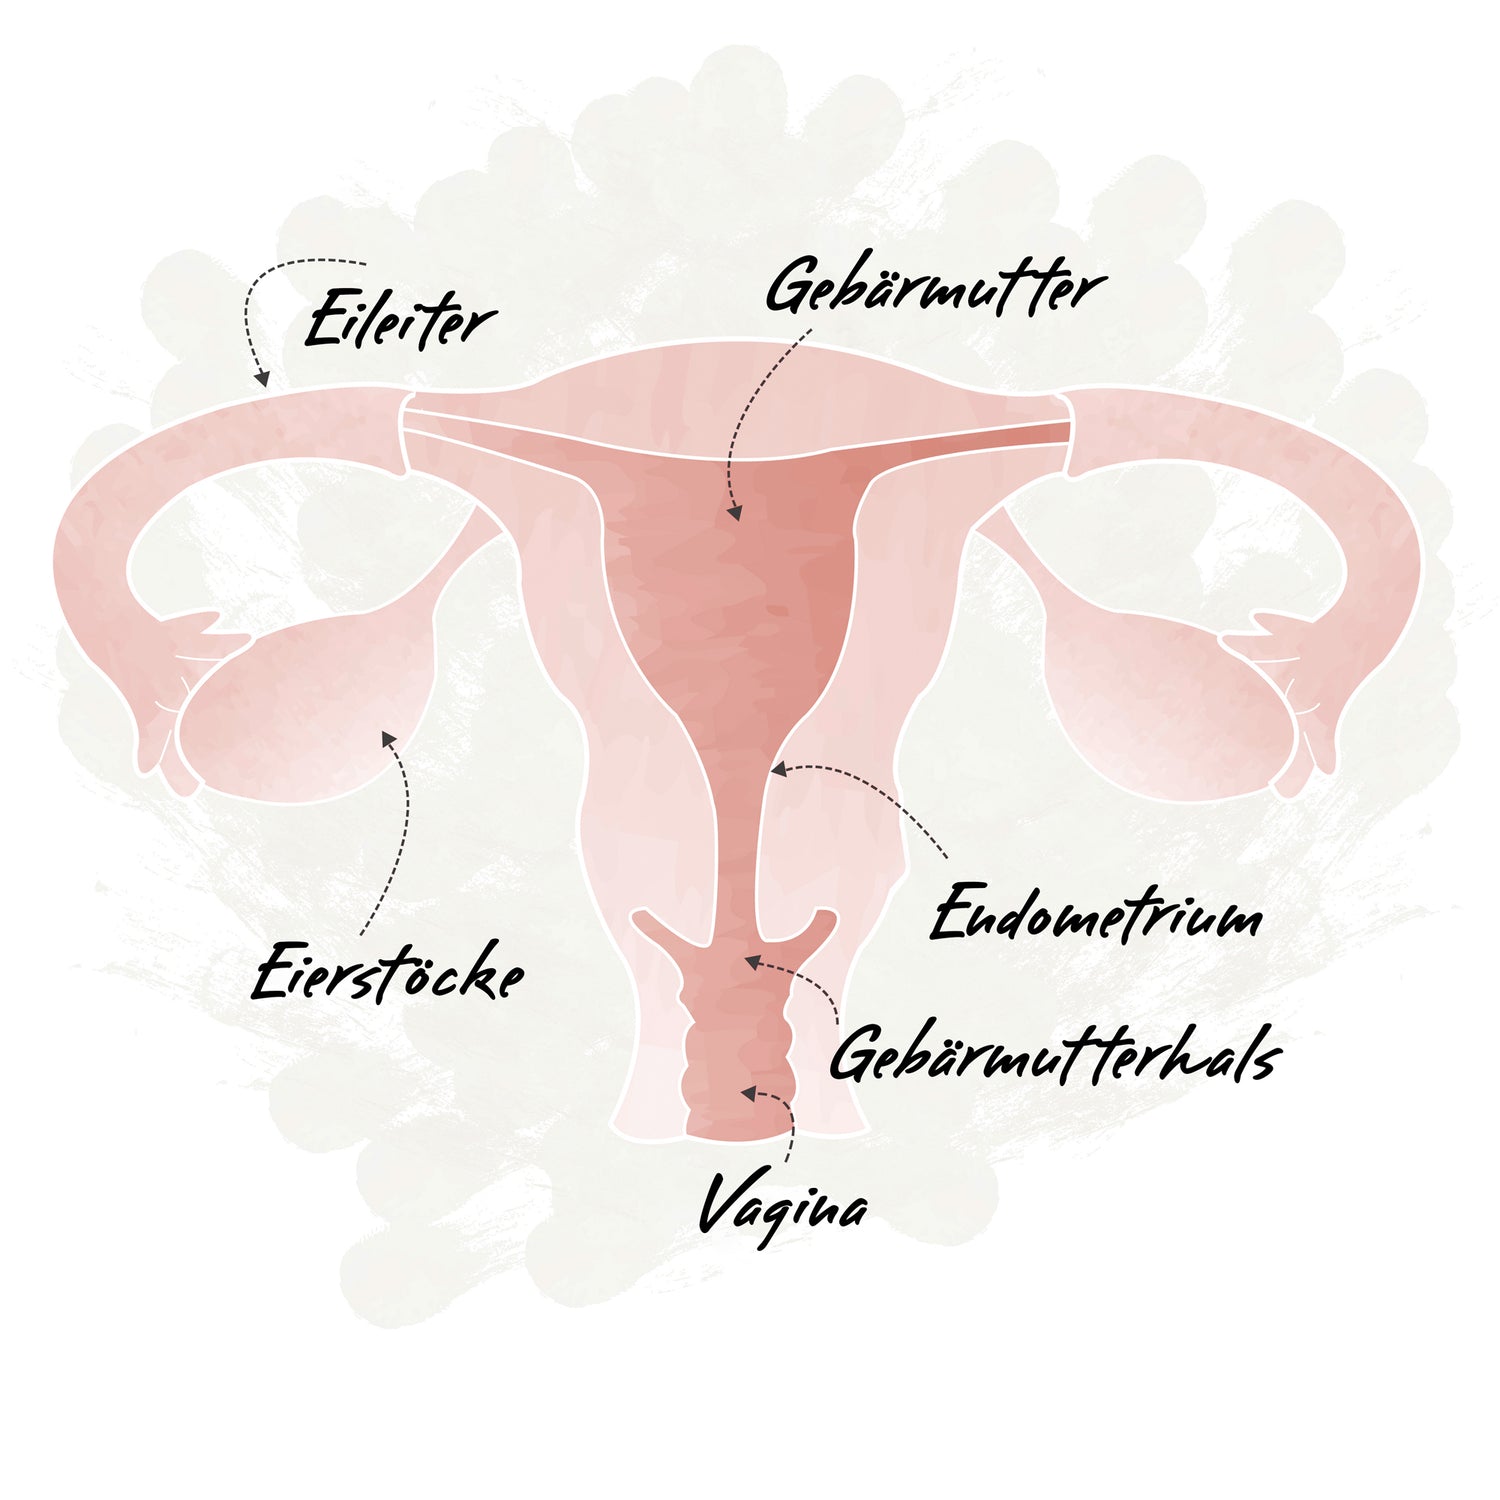 Illustration Anatomie innerer Intimbereich Frau mit Beschriftung für Vagina, Gebärmutterhals, Endometrium, Uterus, Eileiter und Eierstöcken